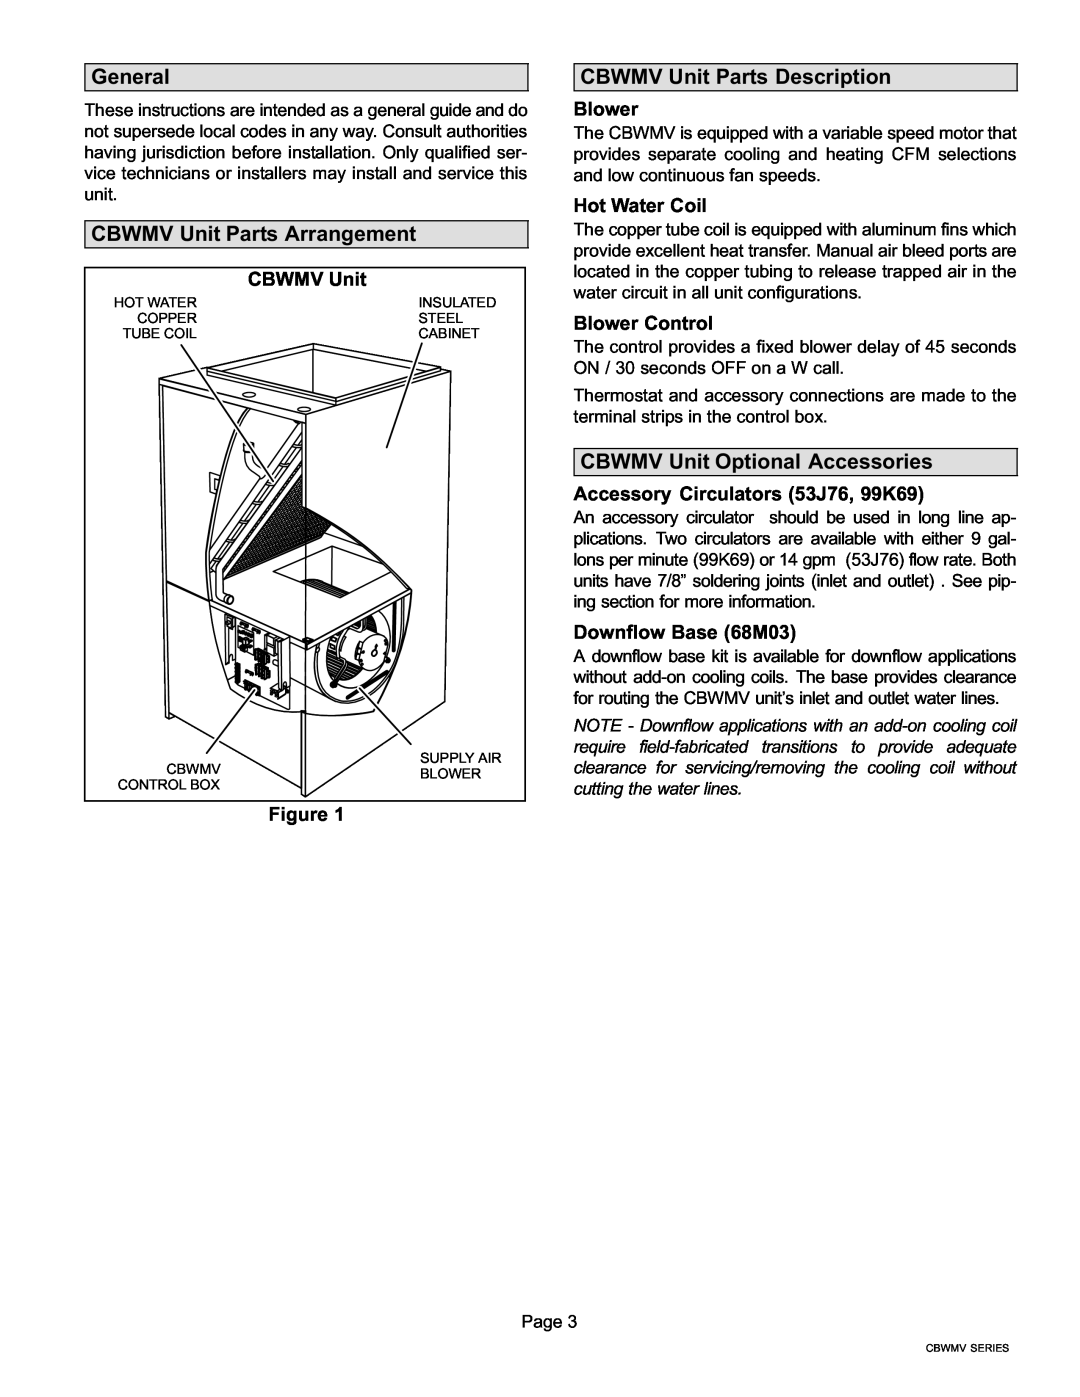 Lennox International Inc General, CBWMV Unit Parts Arrangement, CBWMV Unit Parts Description, Blower, Hot Water Coil 